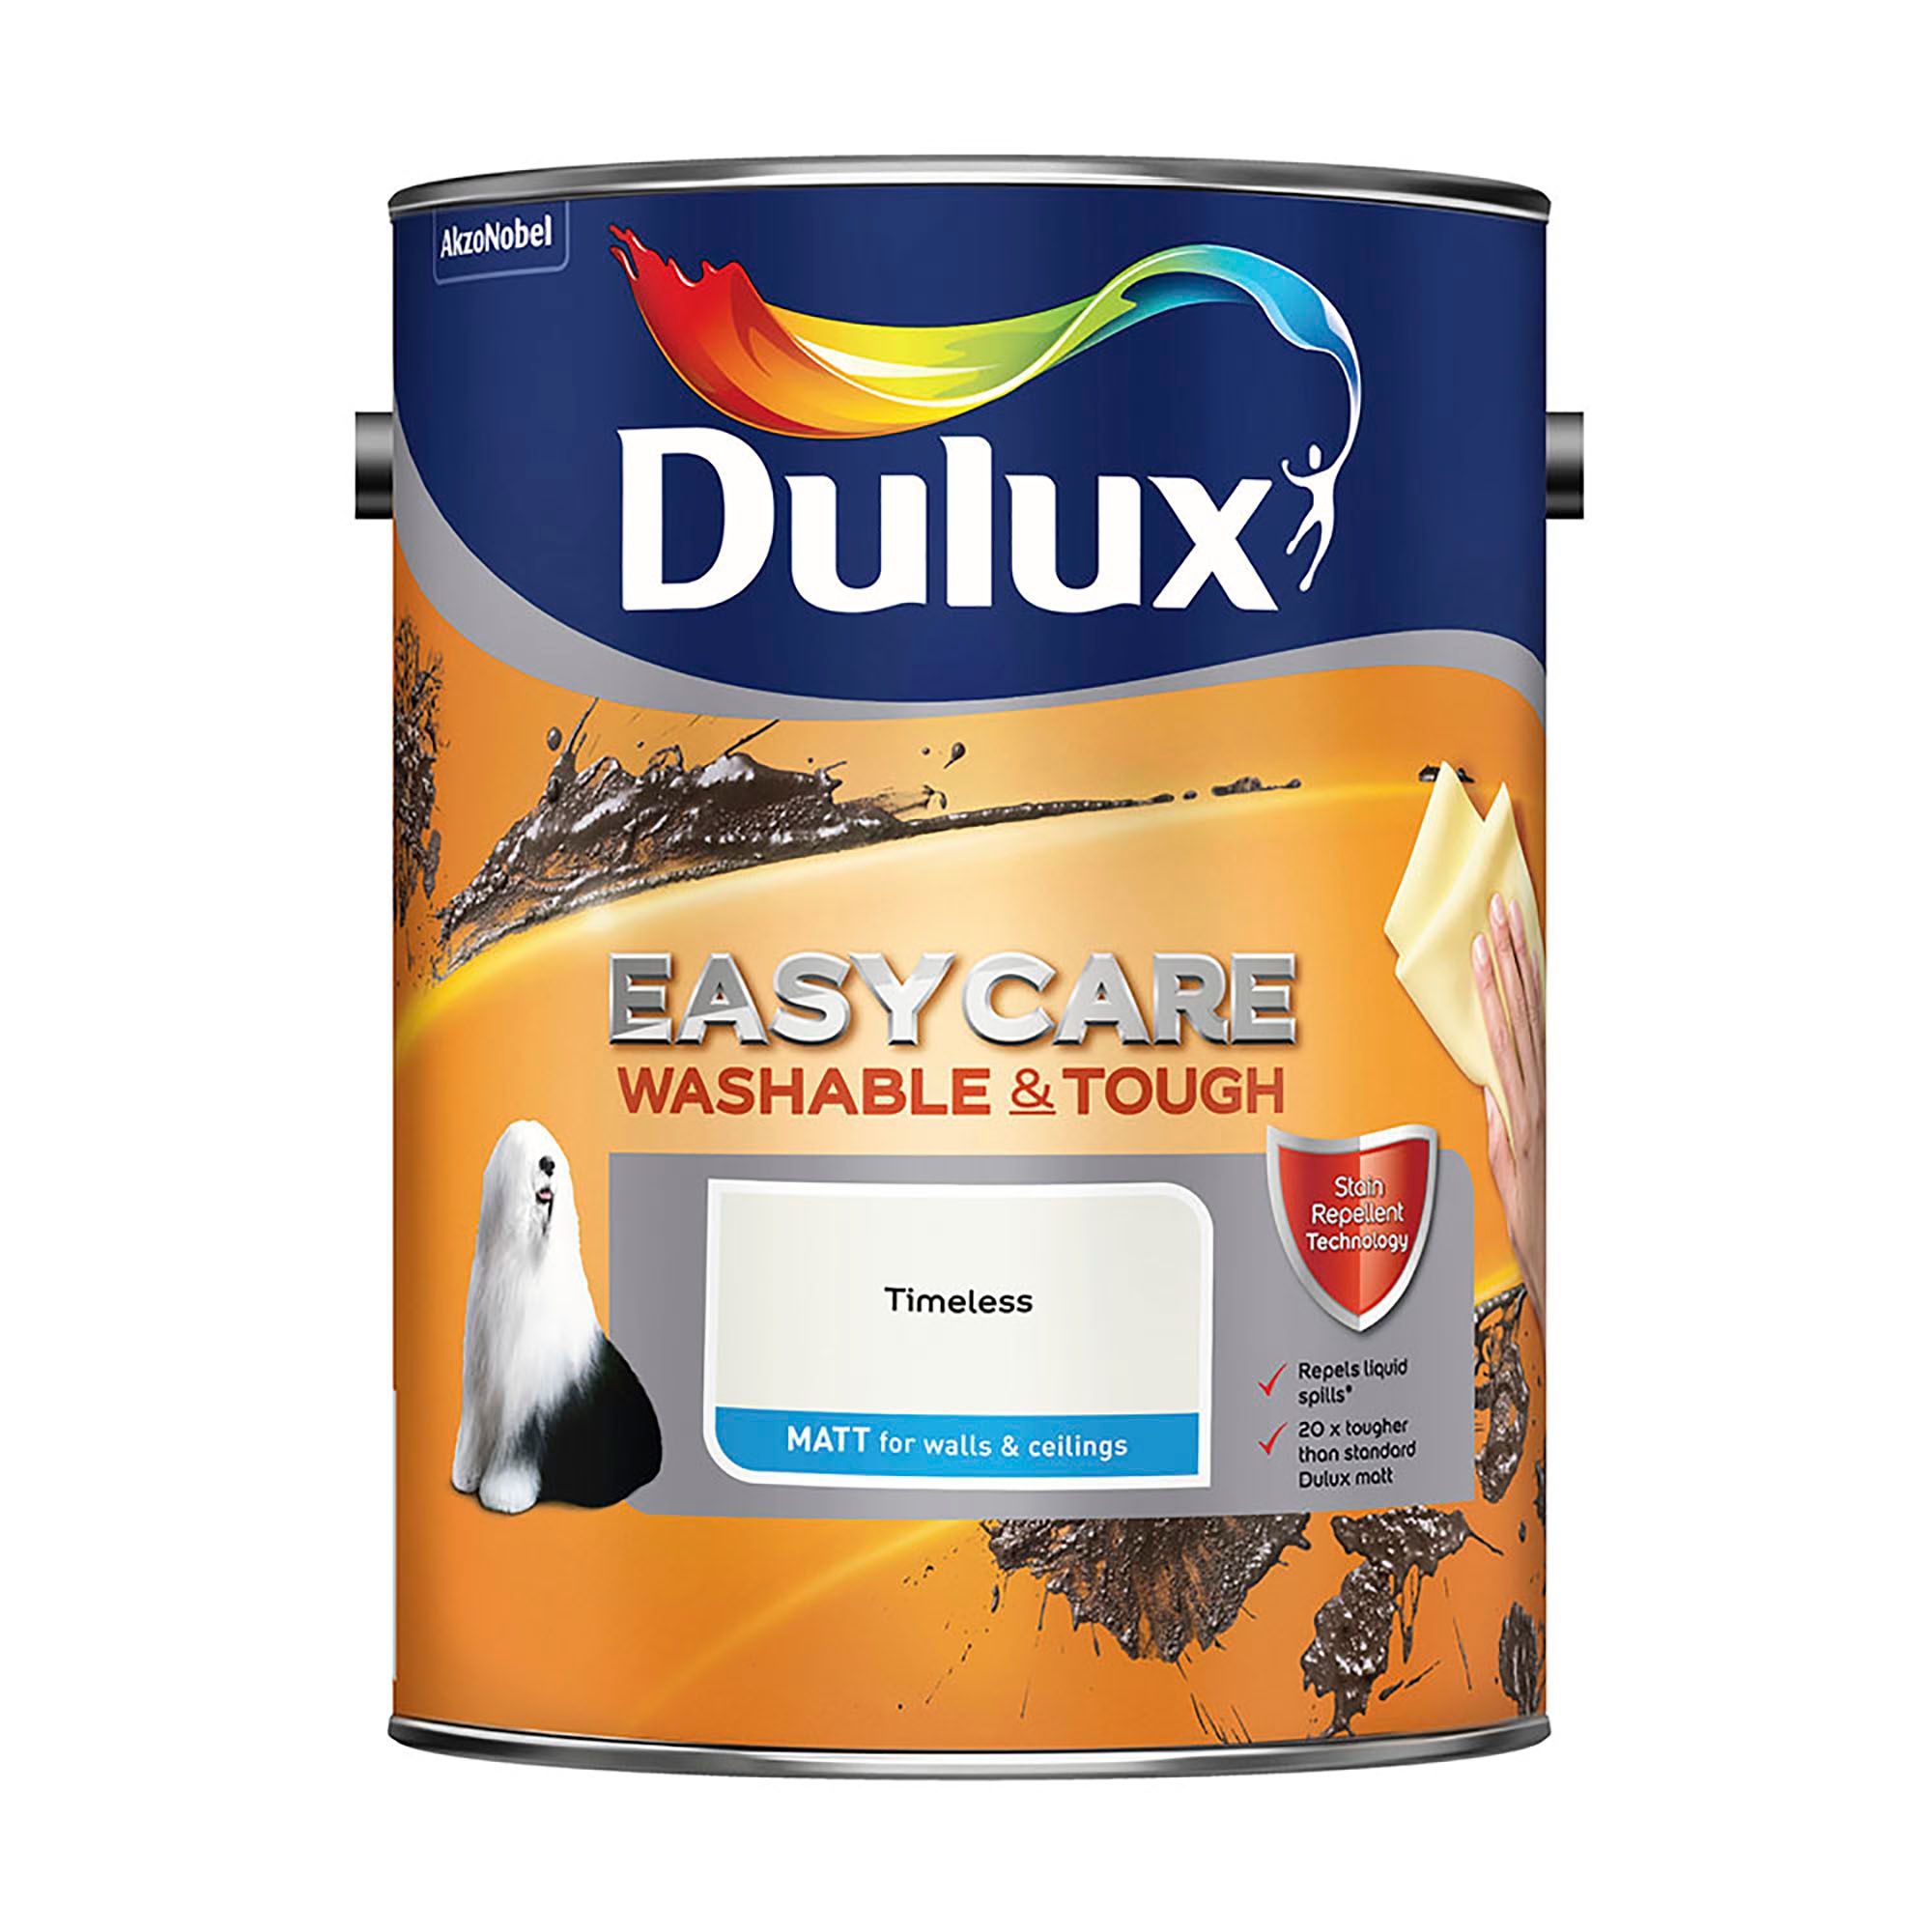 Dulux Easycare Timeless Matt Emulsion paint, 5L